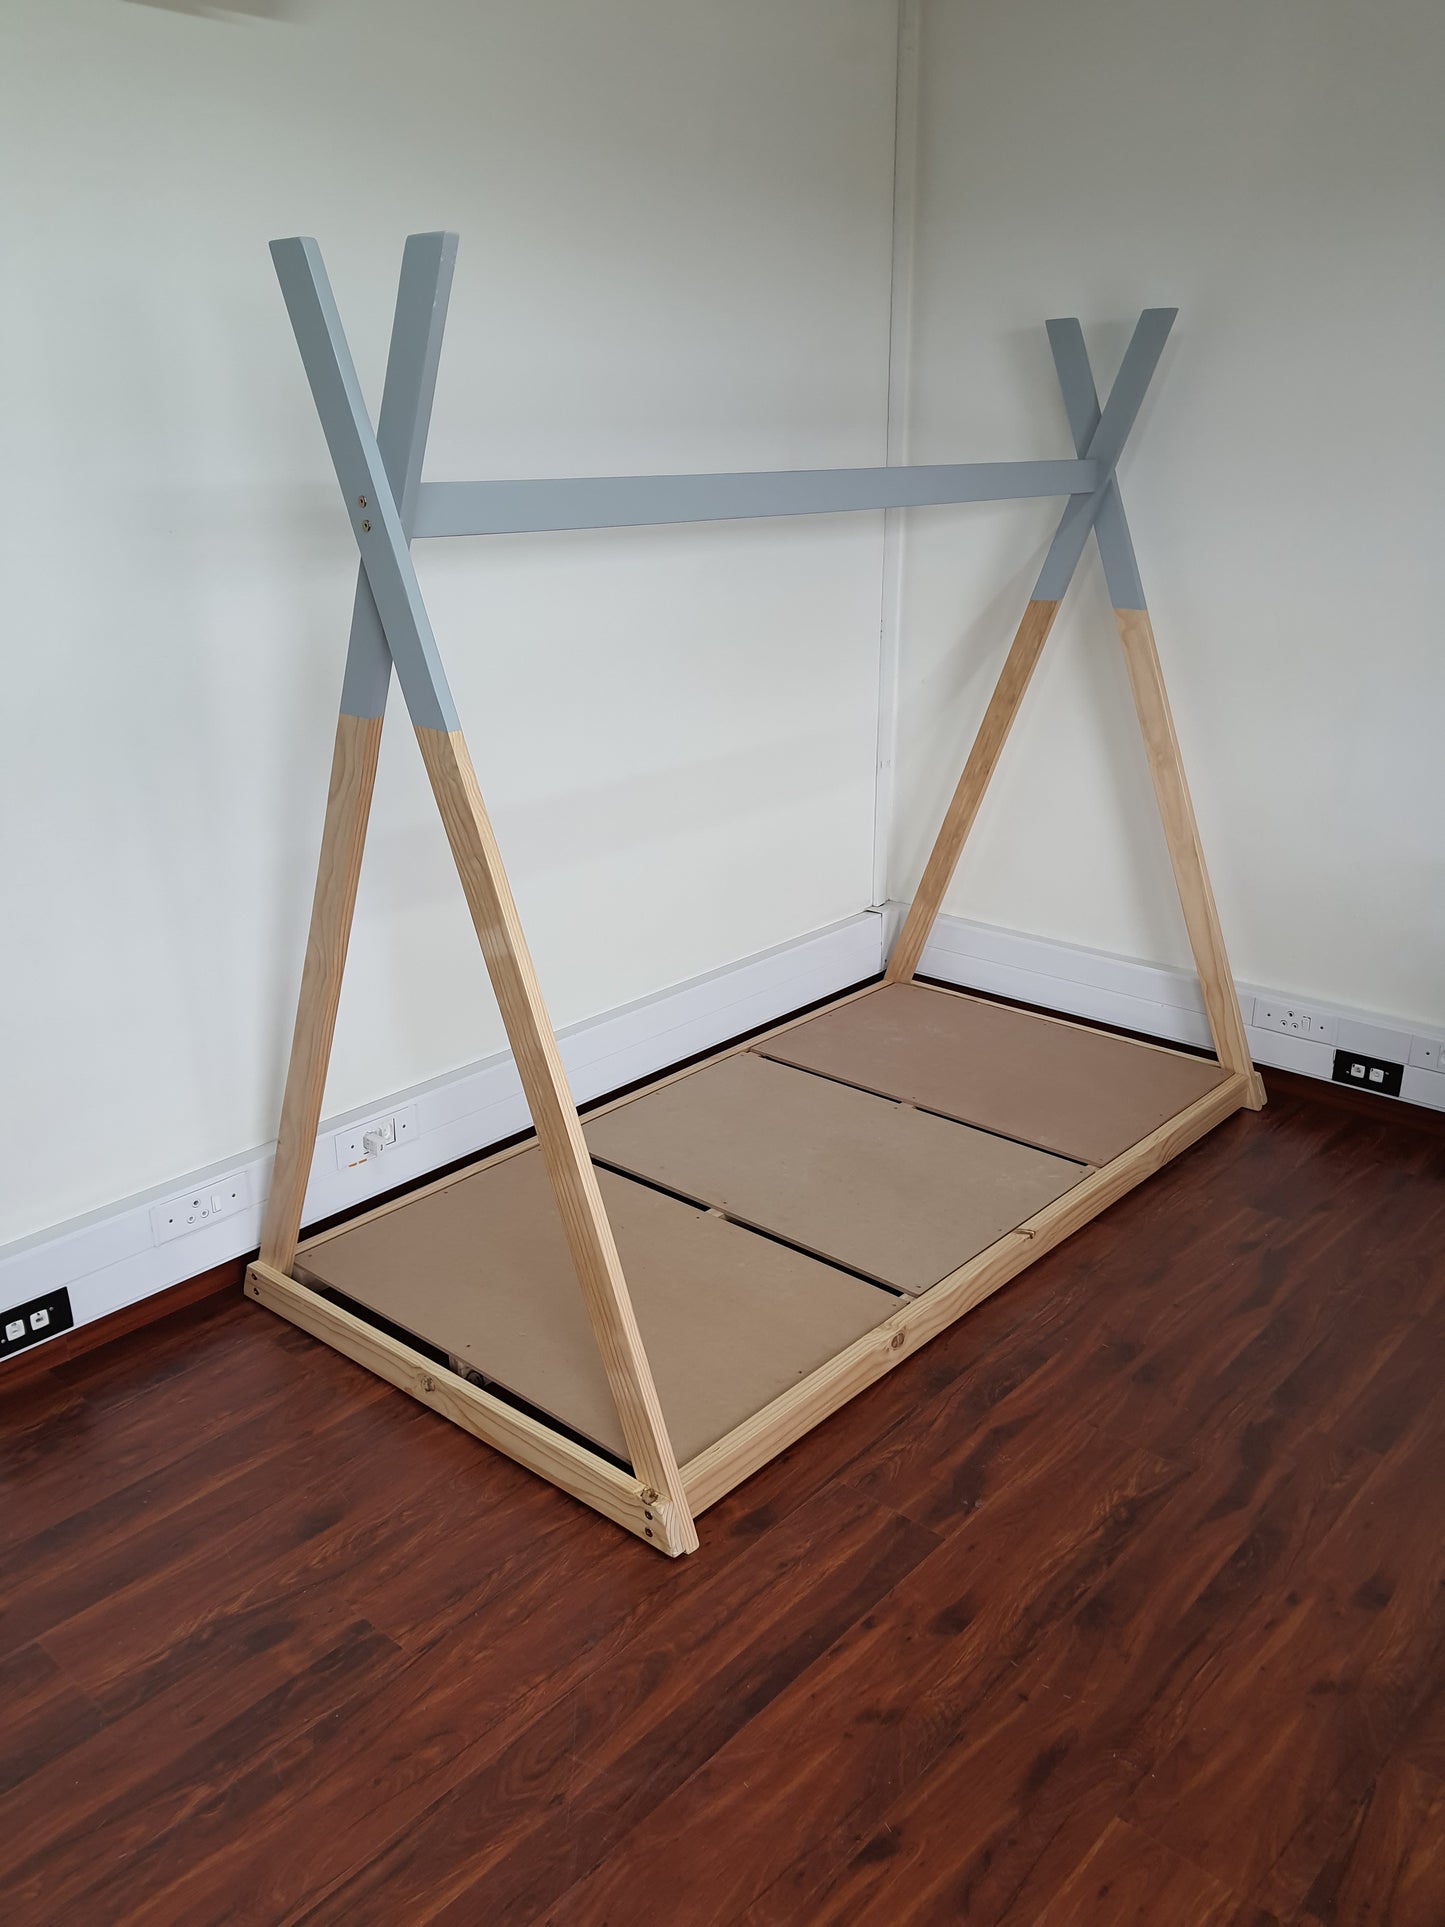 Insert Base (for bed frame) - Furniture